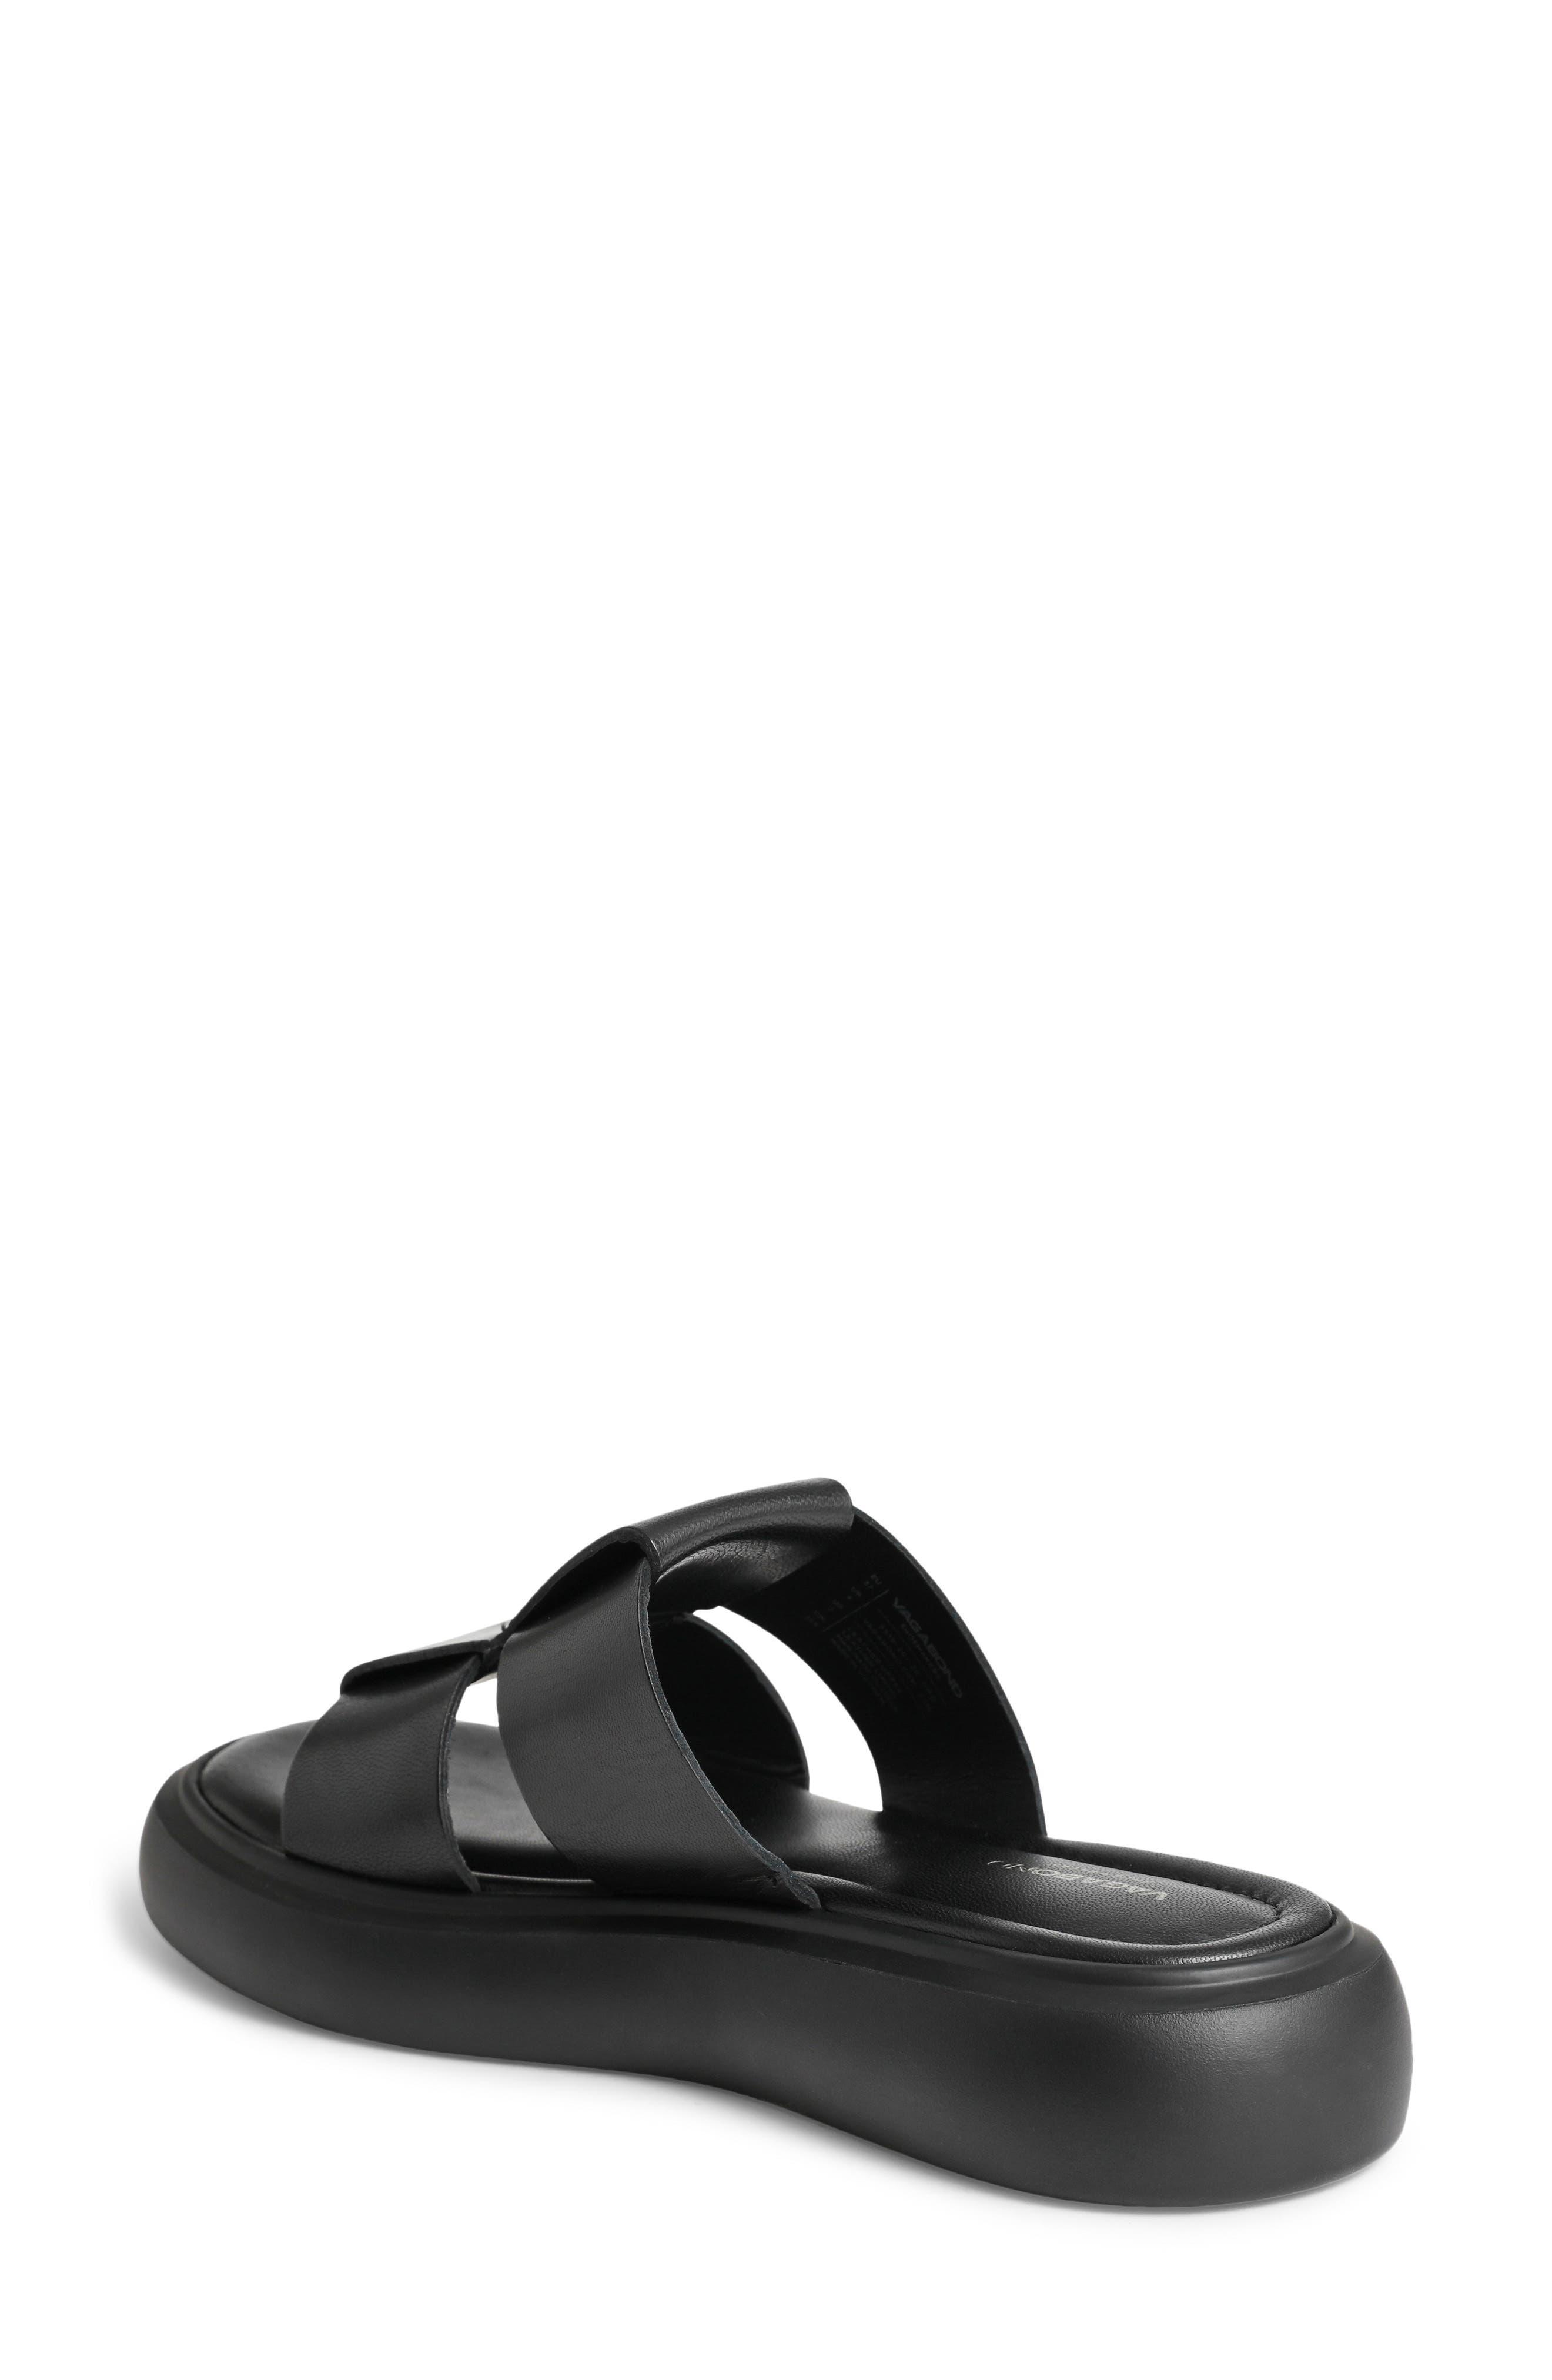 Vagabond Shoemakers Blenda Platform Slide Sandal in Black | Lyst